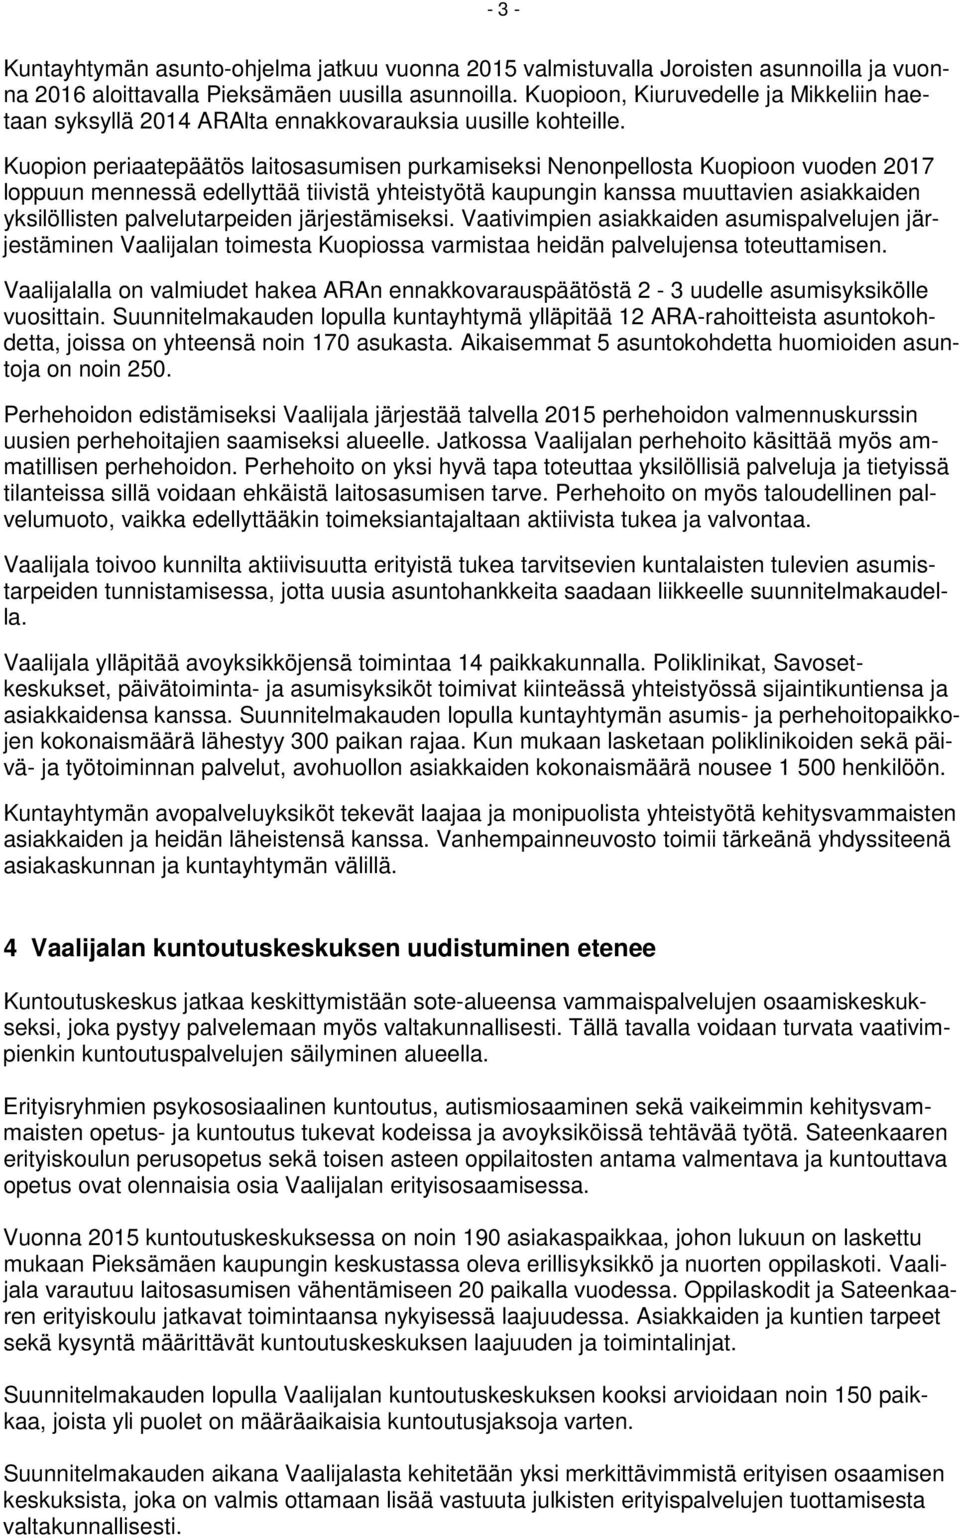 Kuopion periaatepäätös laitosasumisen purkamiseksi Nenonpellosta Kuopioon vuoden 2017 loppuun mennessä edellyttää tiivistä yhteistyötä kaupungin kanssa muuttavien asiakkaiden yksilöllisten